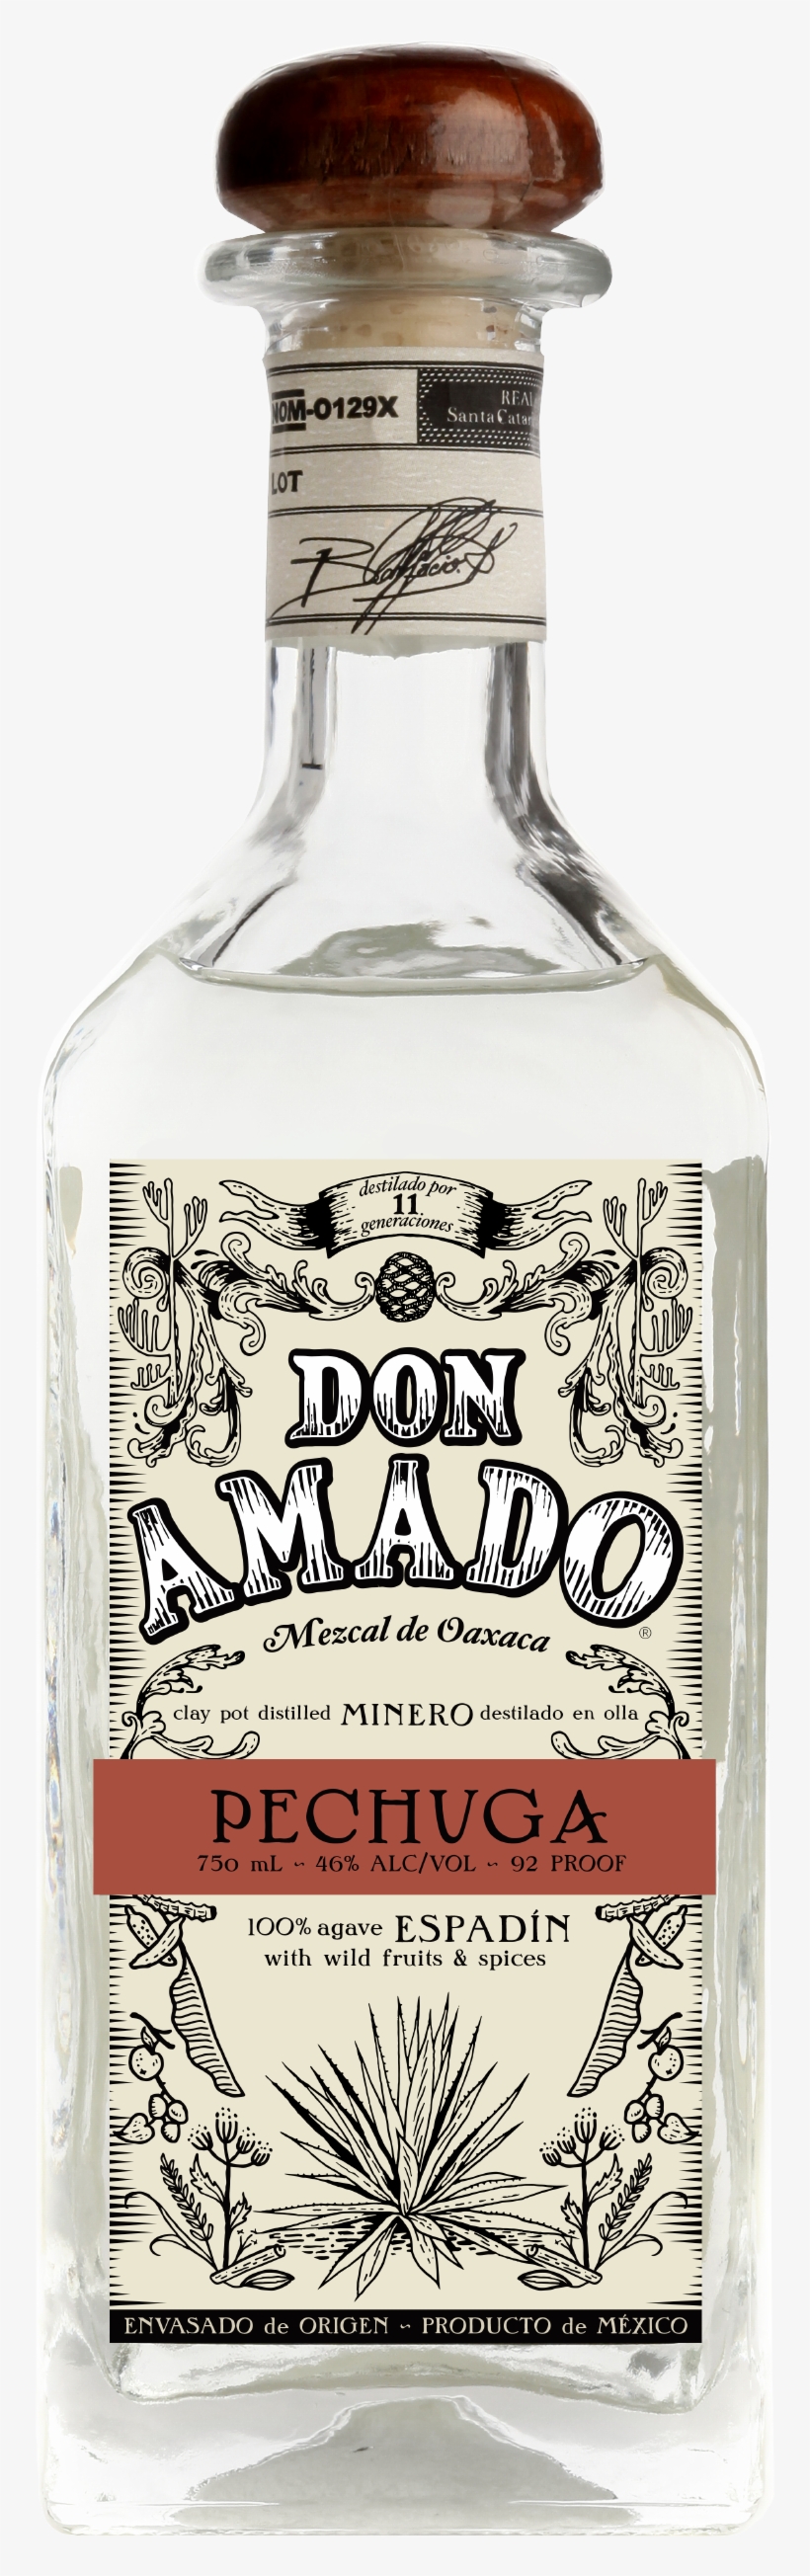 Bottle Shot (png) - Don Amado Mezcal Pechuga 750ml - Free Transparent ...